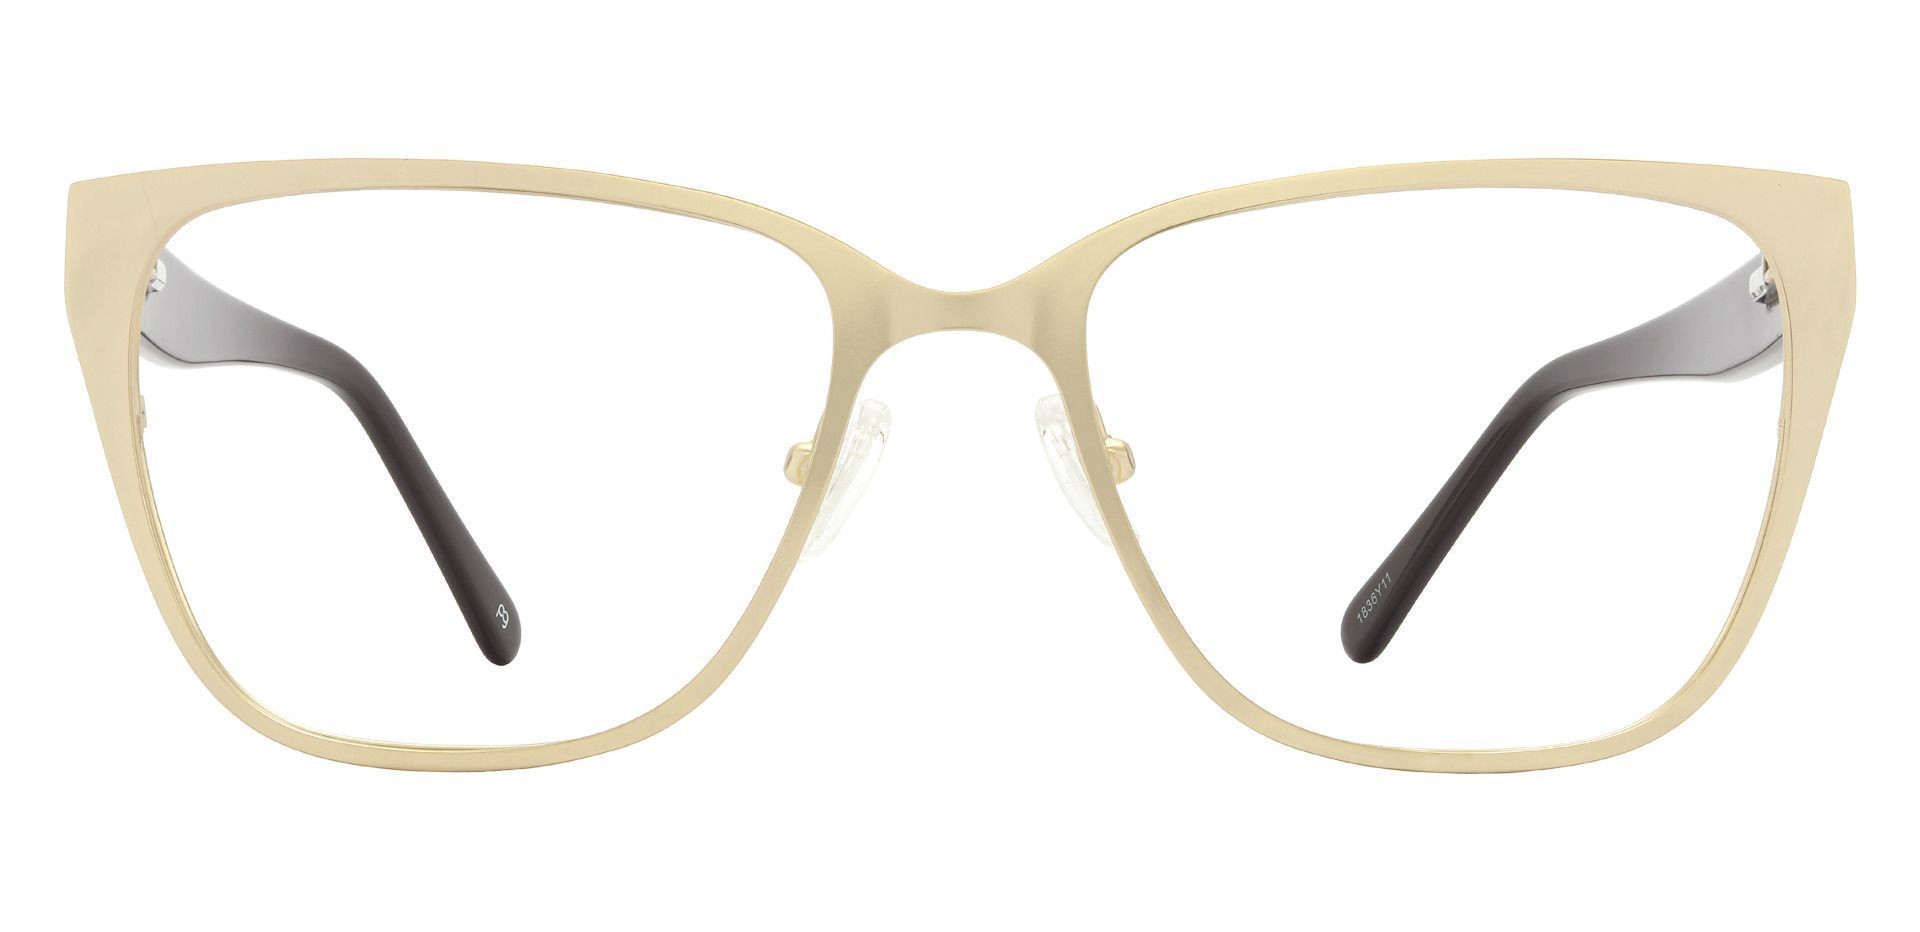 Stowe Square Prescription Glasses - Gray | Men's Eyeglasses | Payne Glasses